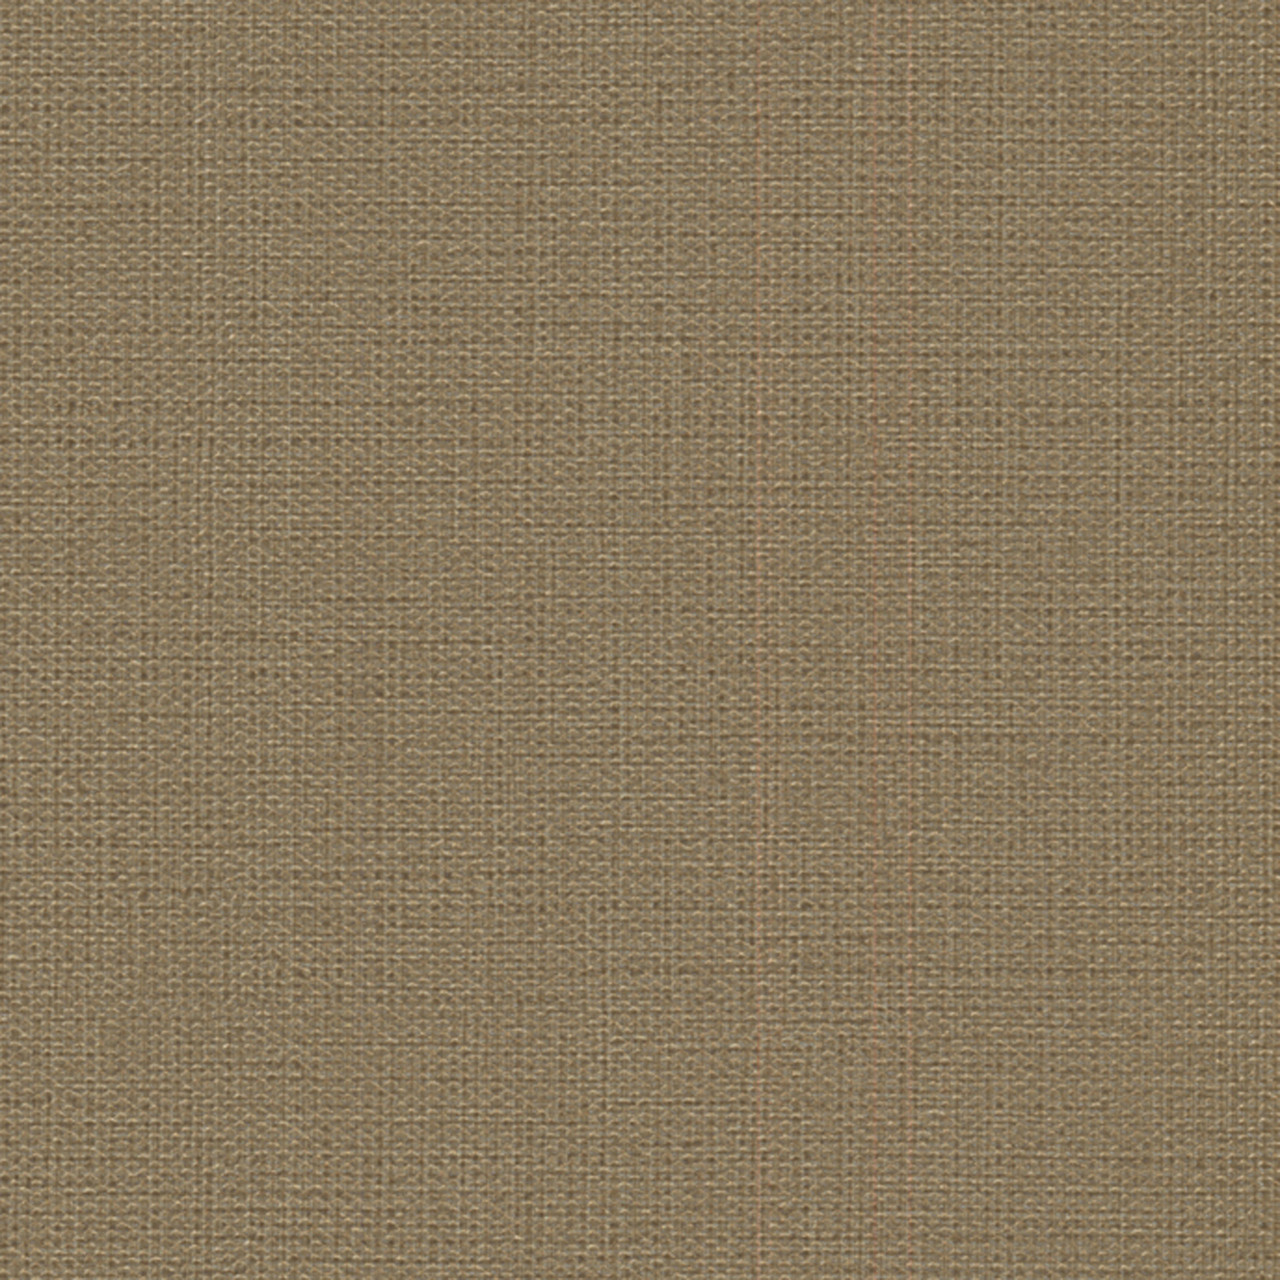 Contemporary Beyond Basics Cotton Texture Cedar Brown Wallpaper 4 Indoorwallpaper Com